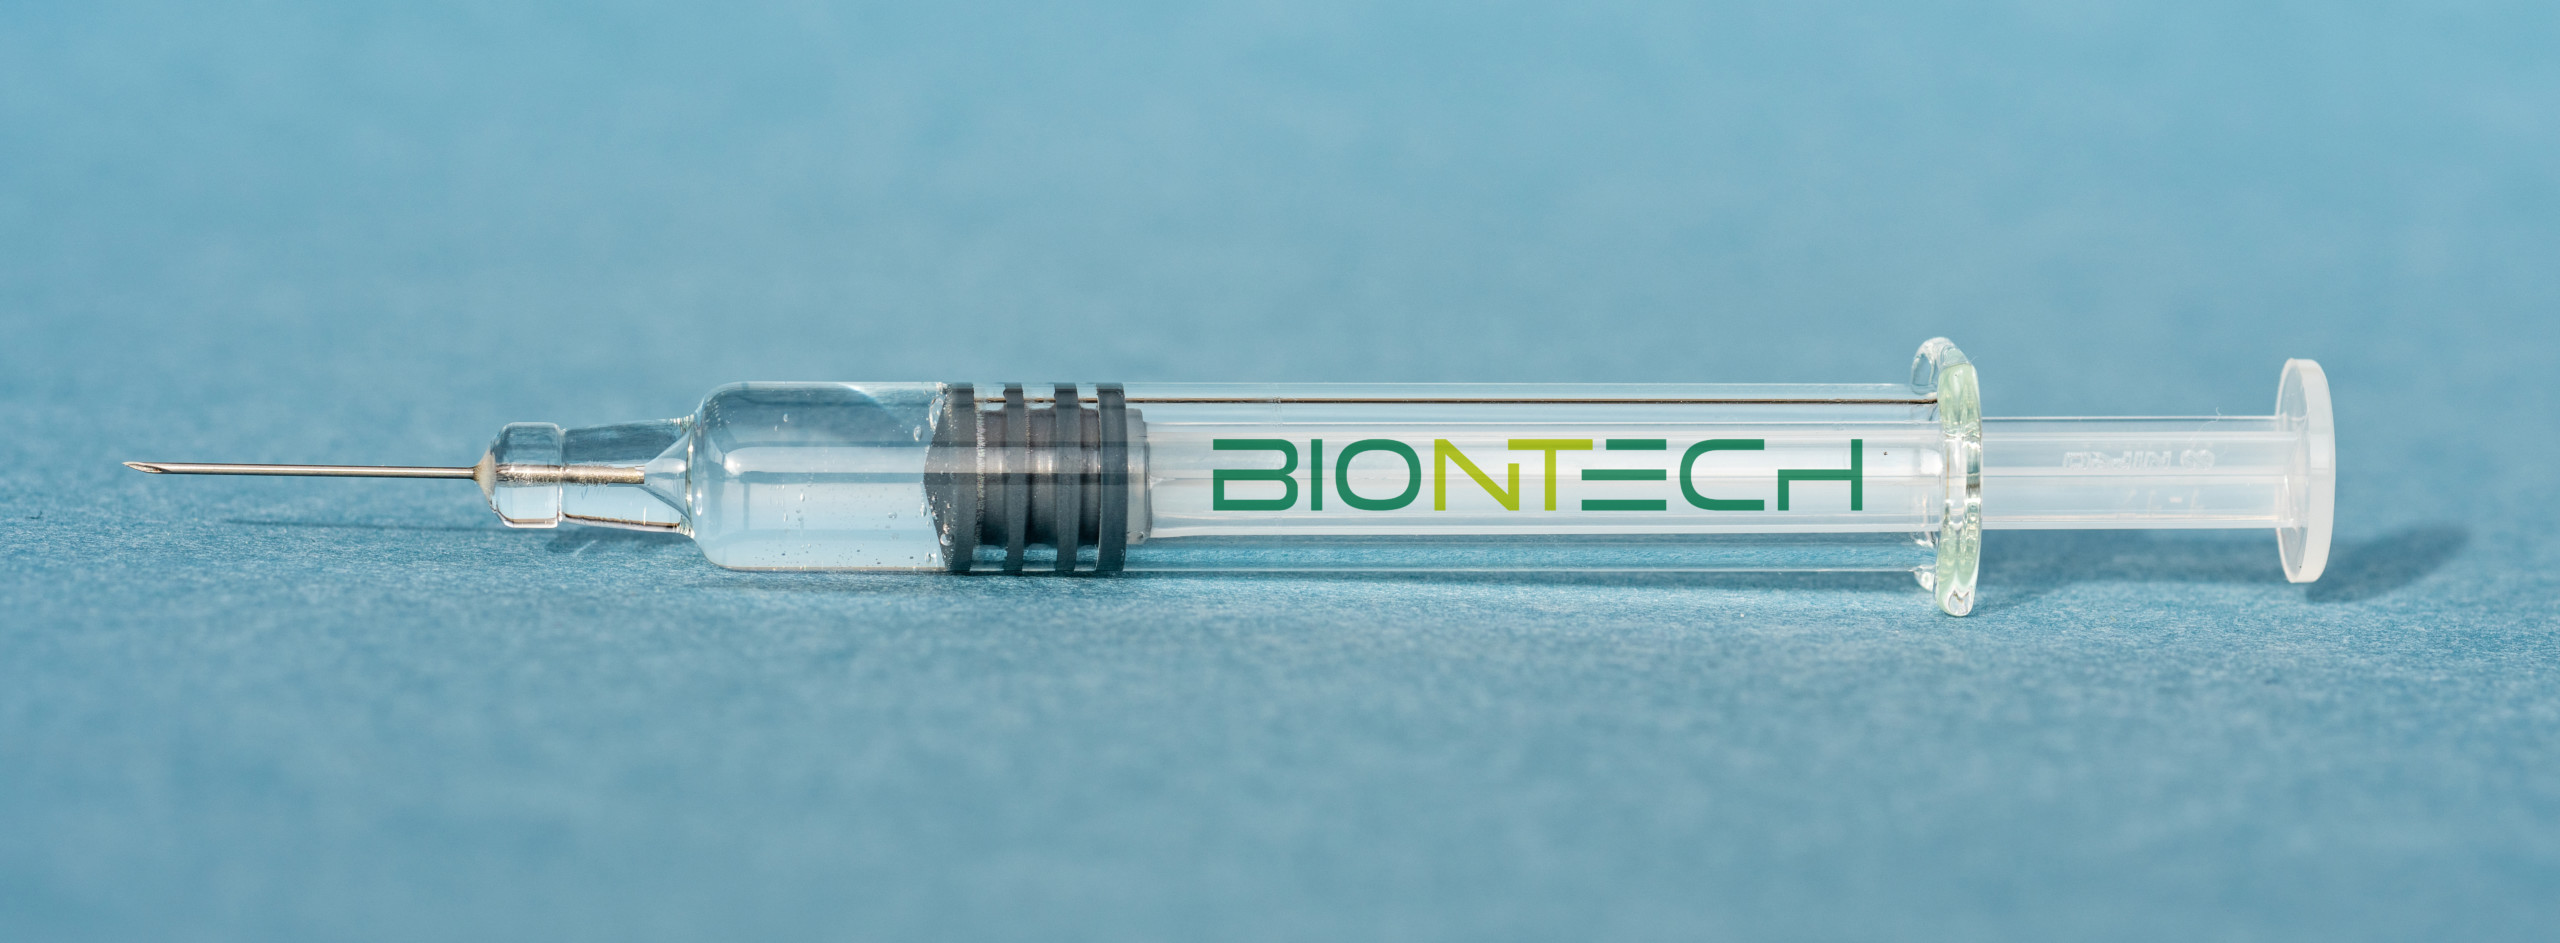 Aufwärtstrend bei BioNTech trotz mäßiger Zahlen